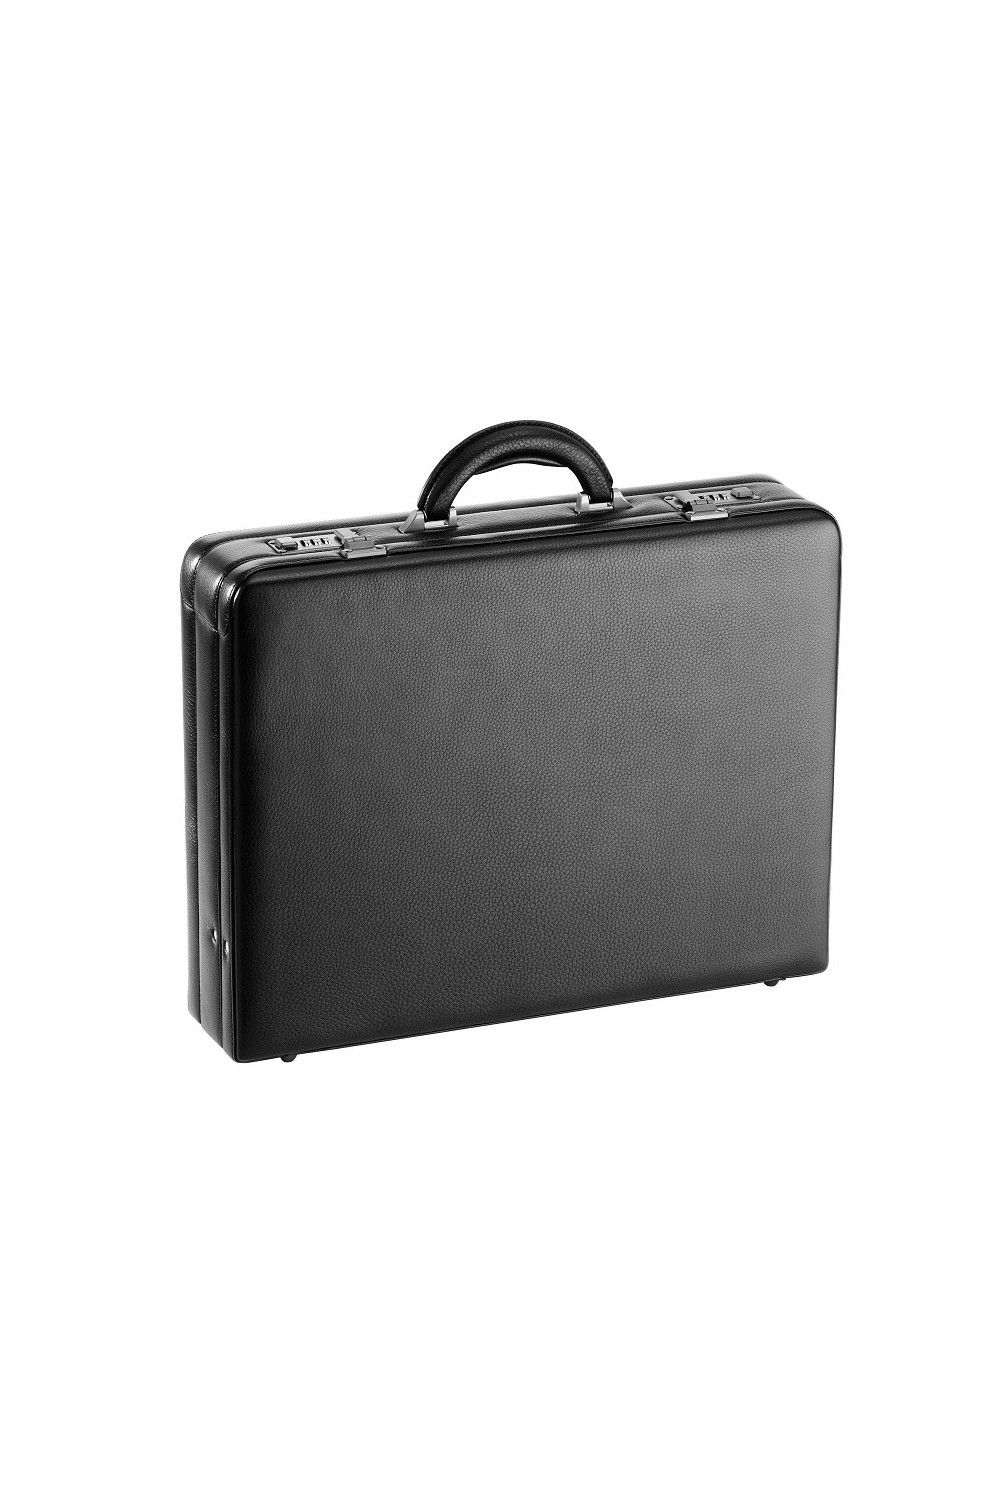 D & N briefcase grained cowhide